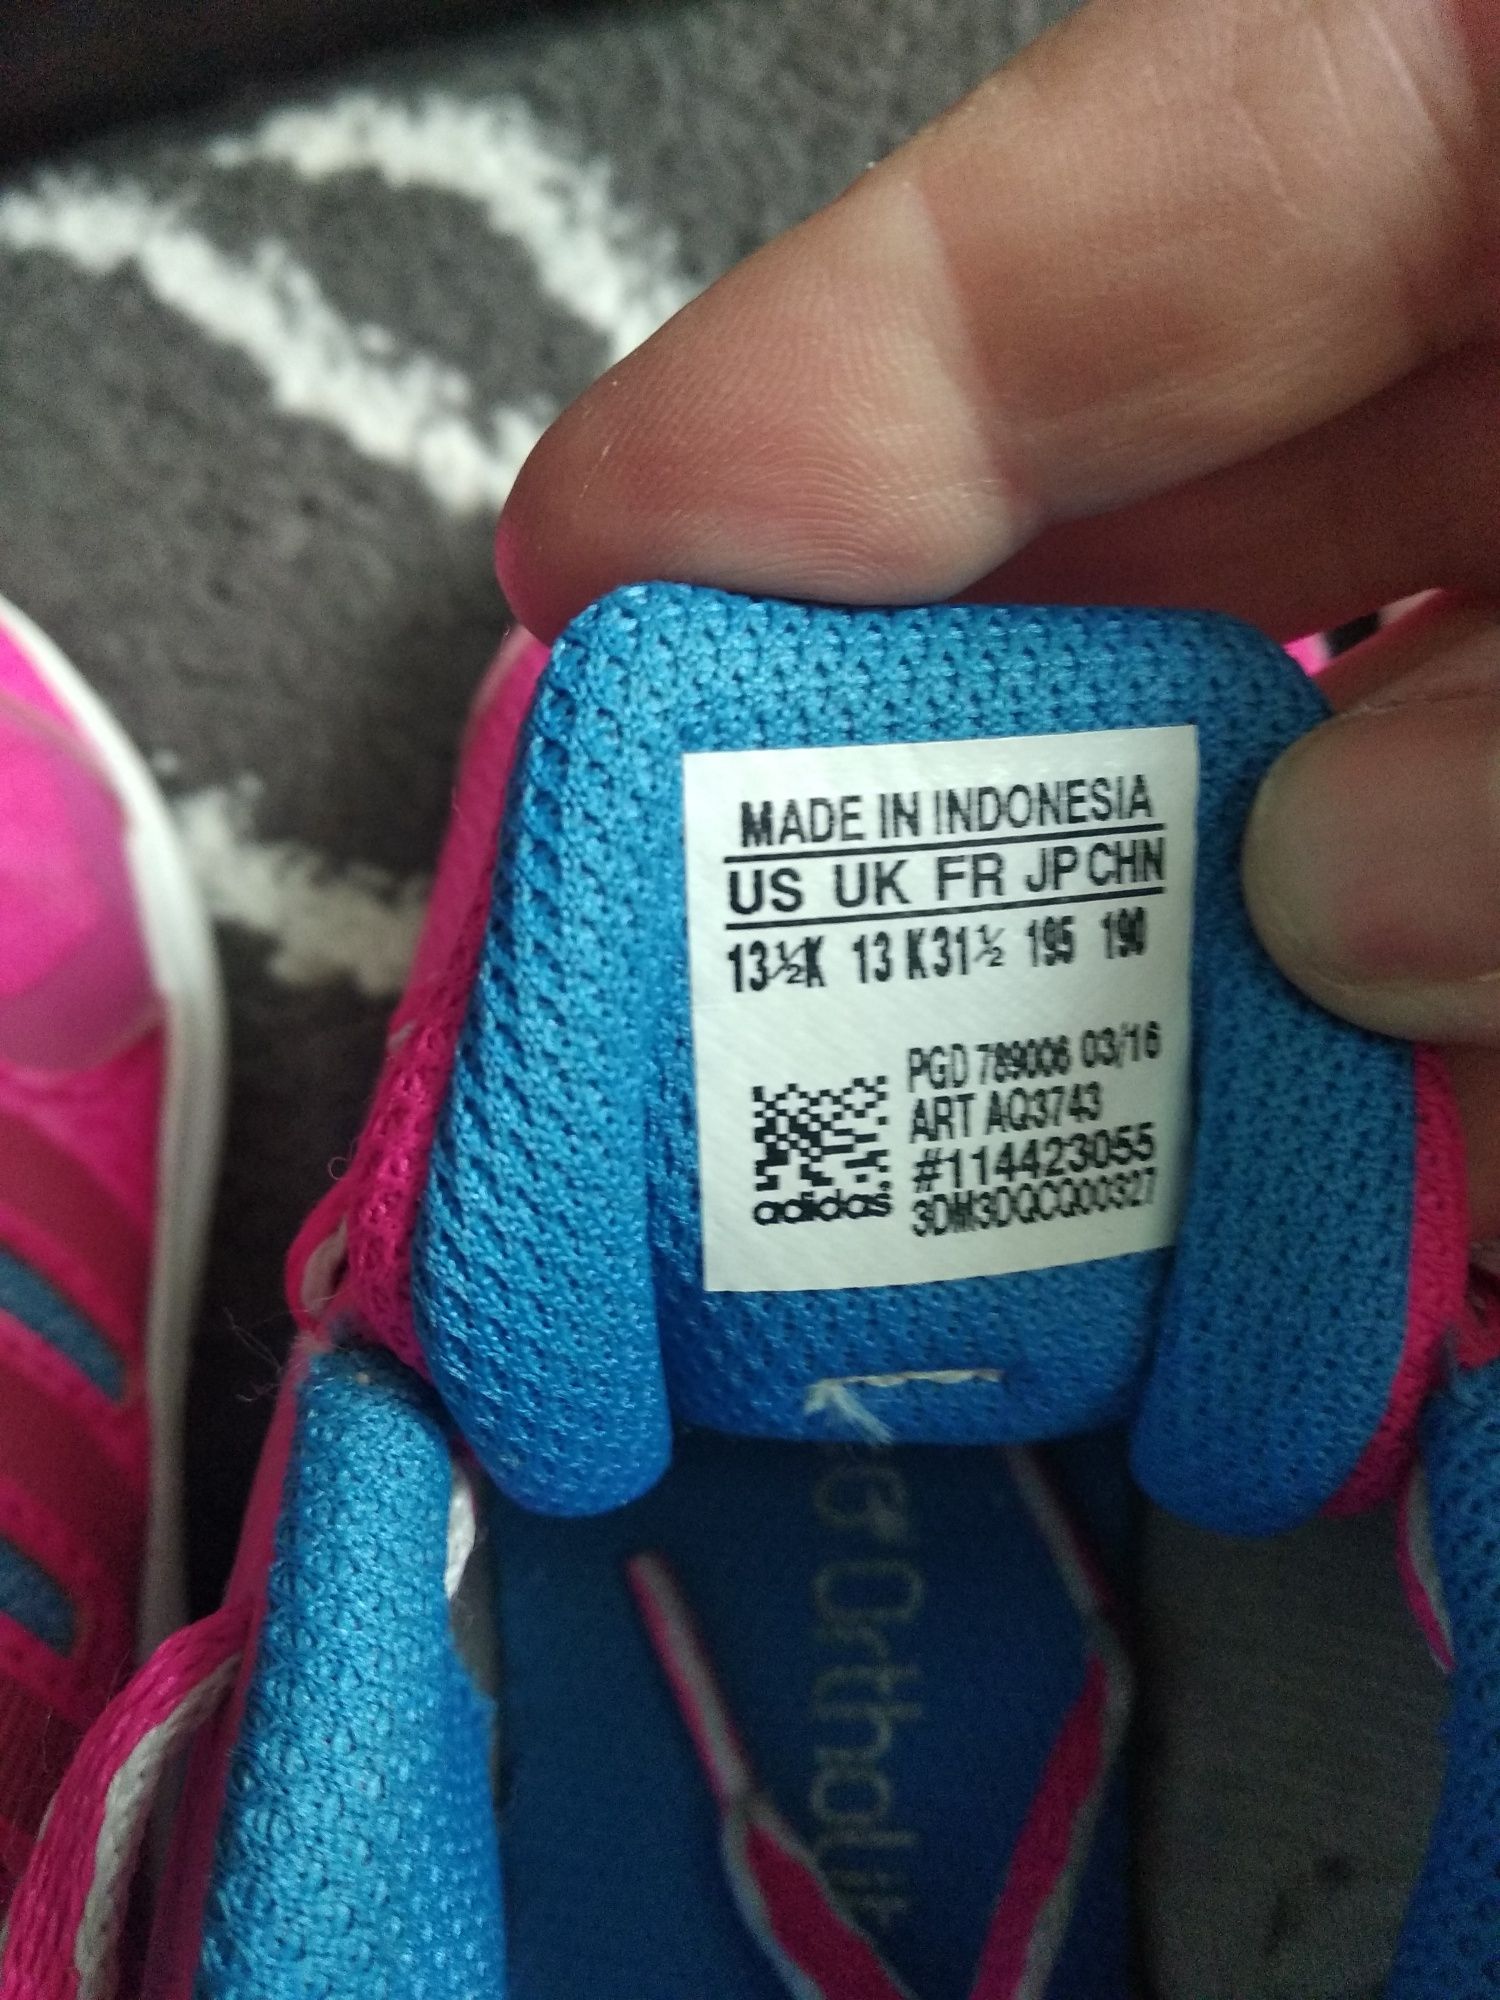 Кросівки дитячі Adidas, Nike 31.5 (32)р. (19-29.5 см).